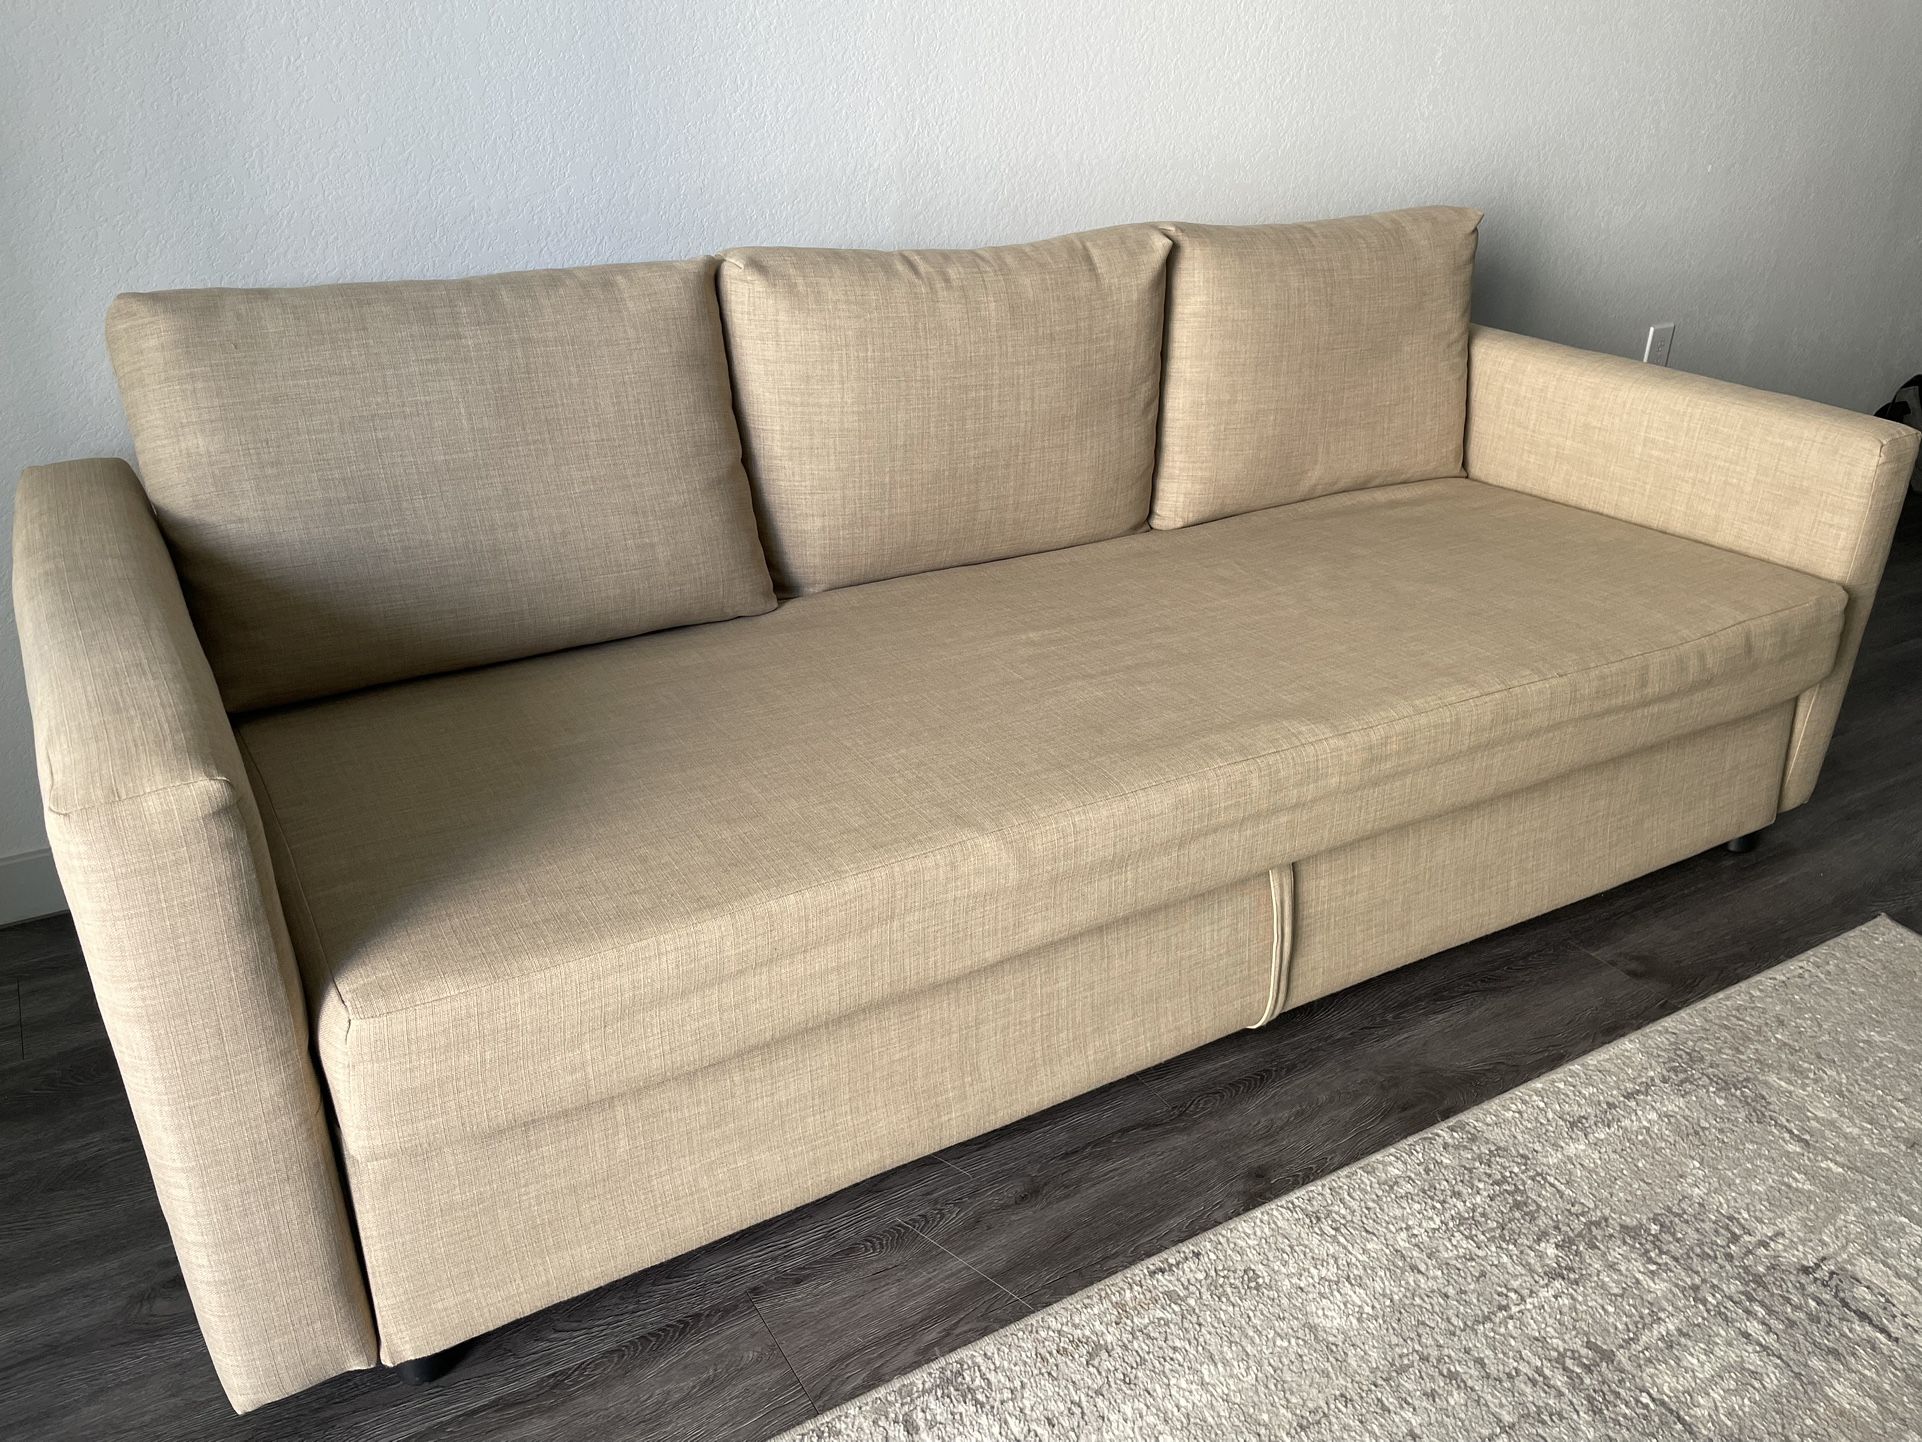 Ikea Friheten Sleeper Sofa